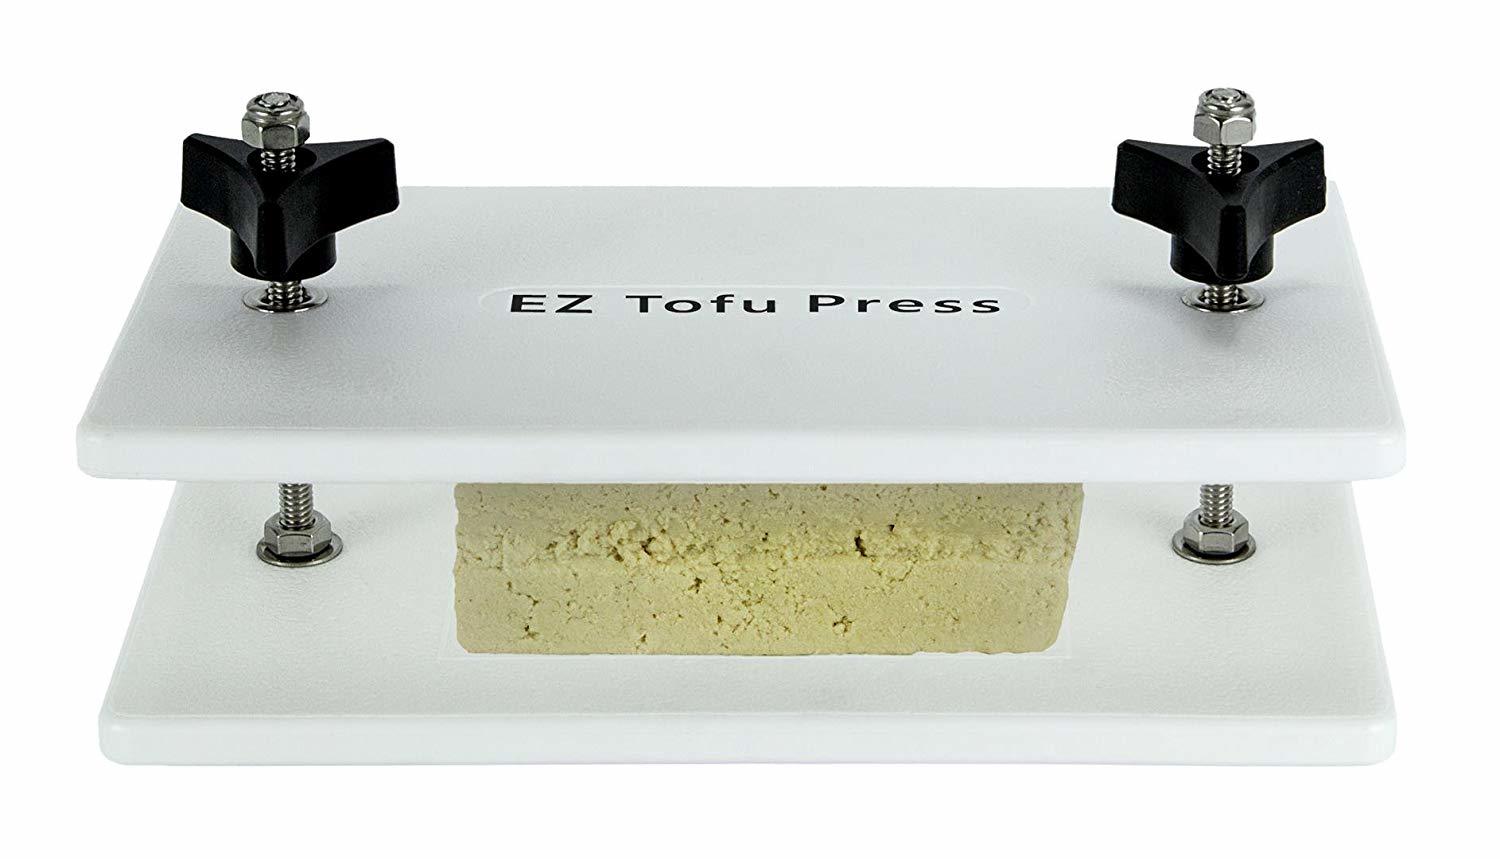 Tofu Cutter - Plastic Kitchen Tool